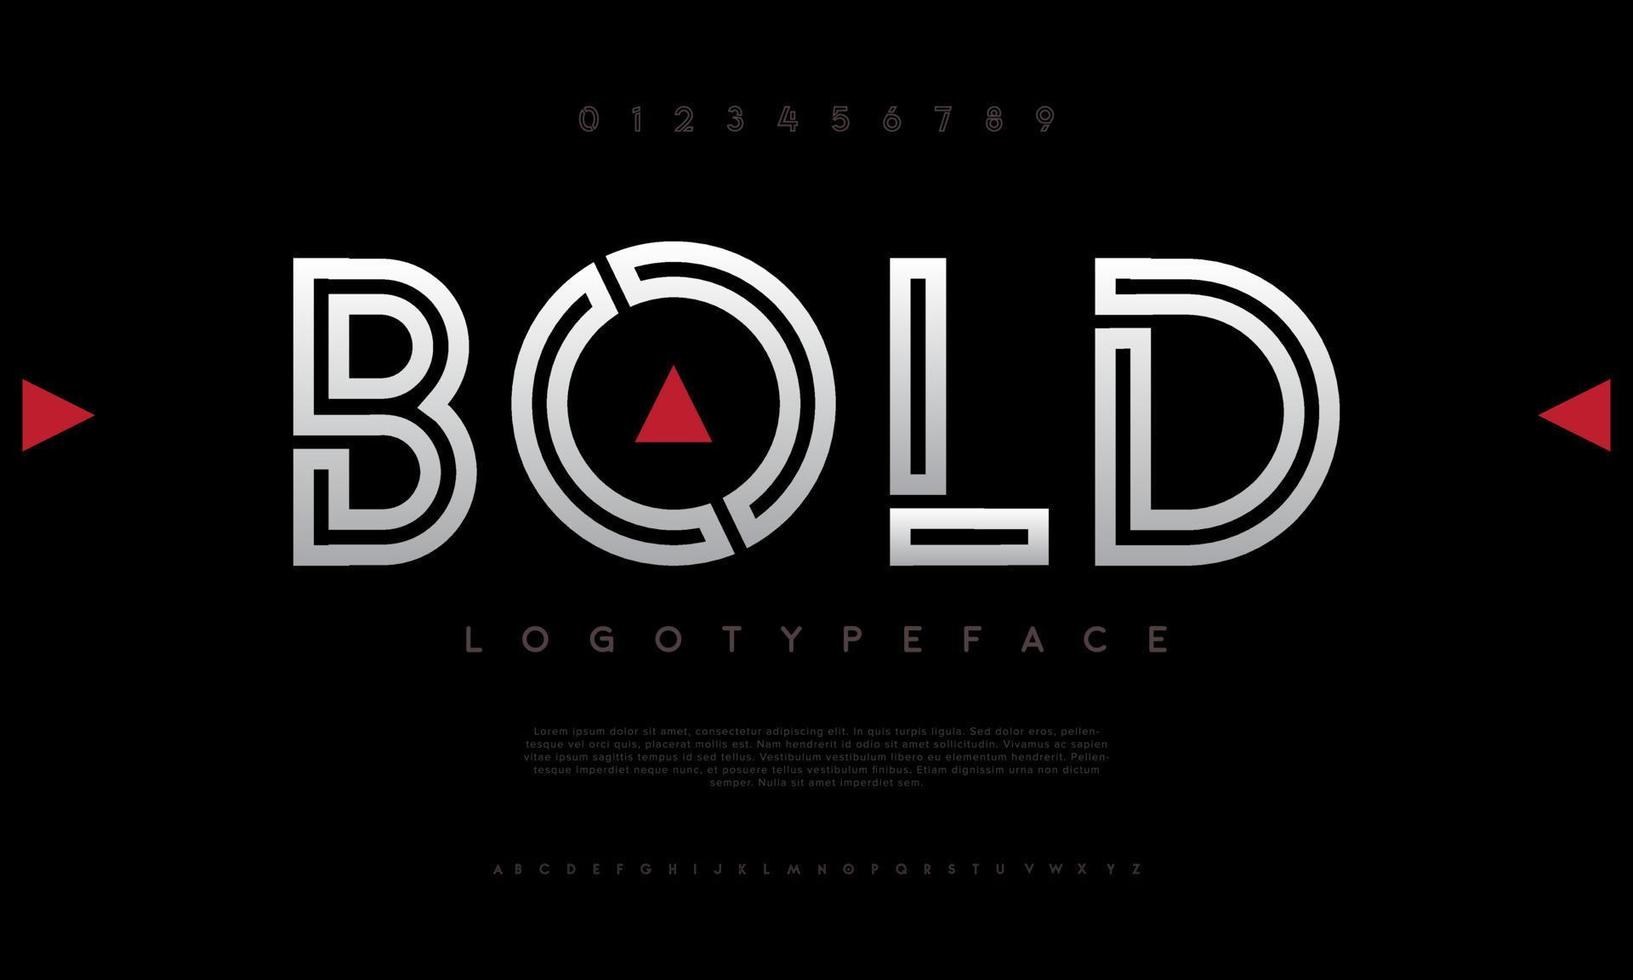 stoutmoedig stedelijk zonder serif alfabet lettertype. logo branding lettertype typografie vector